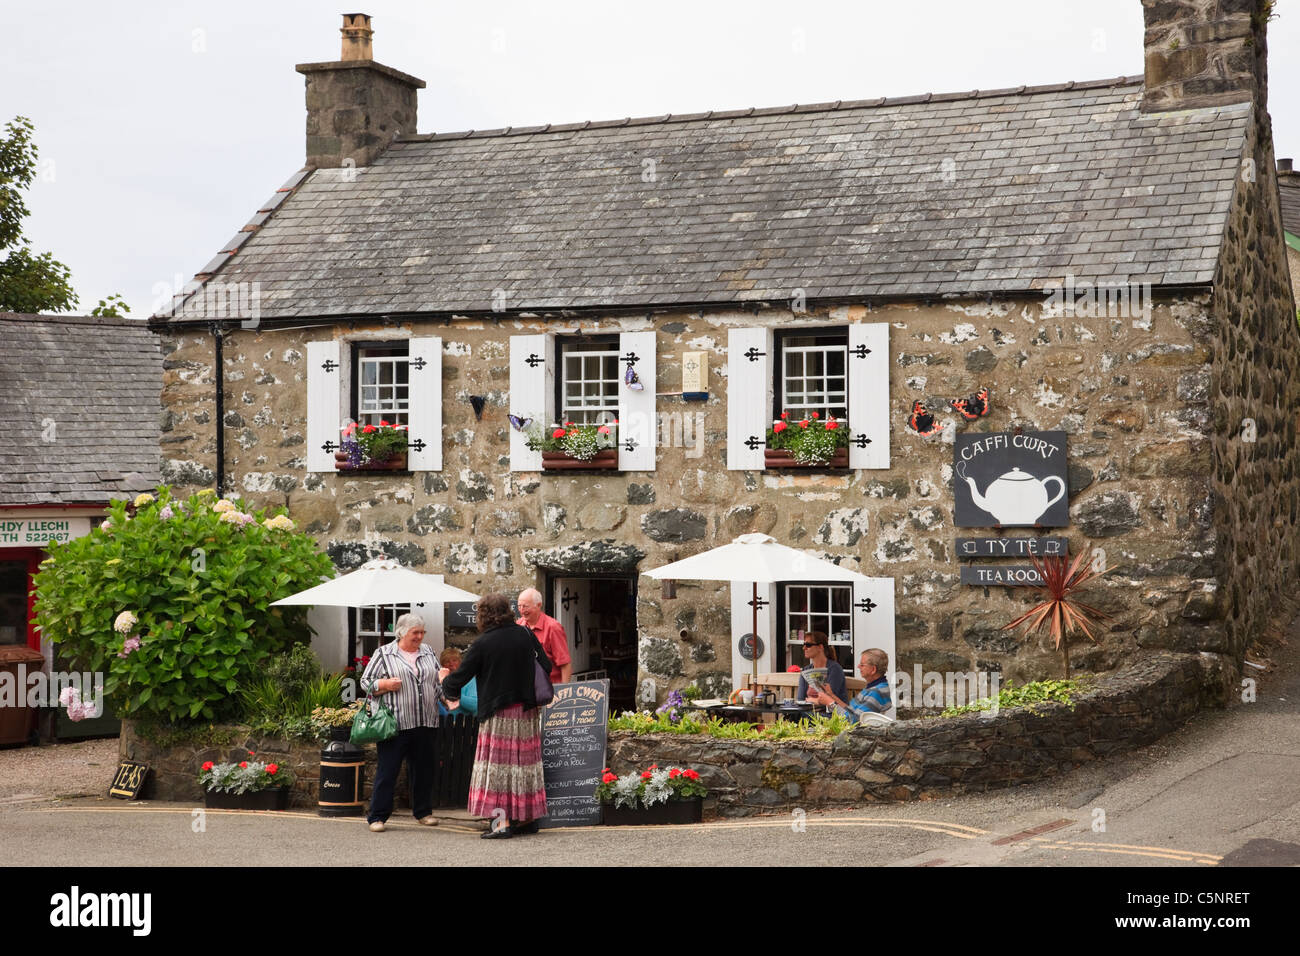 Sale da tè in un tradizionale cottage in pietra con persone sedute all'esterno. Criccieth, Lleyn Peninsula, Gwynedd, Galles del Nord, Regno Unito. Foto Stock